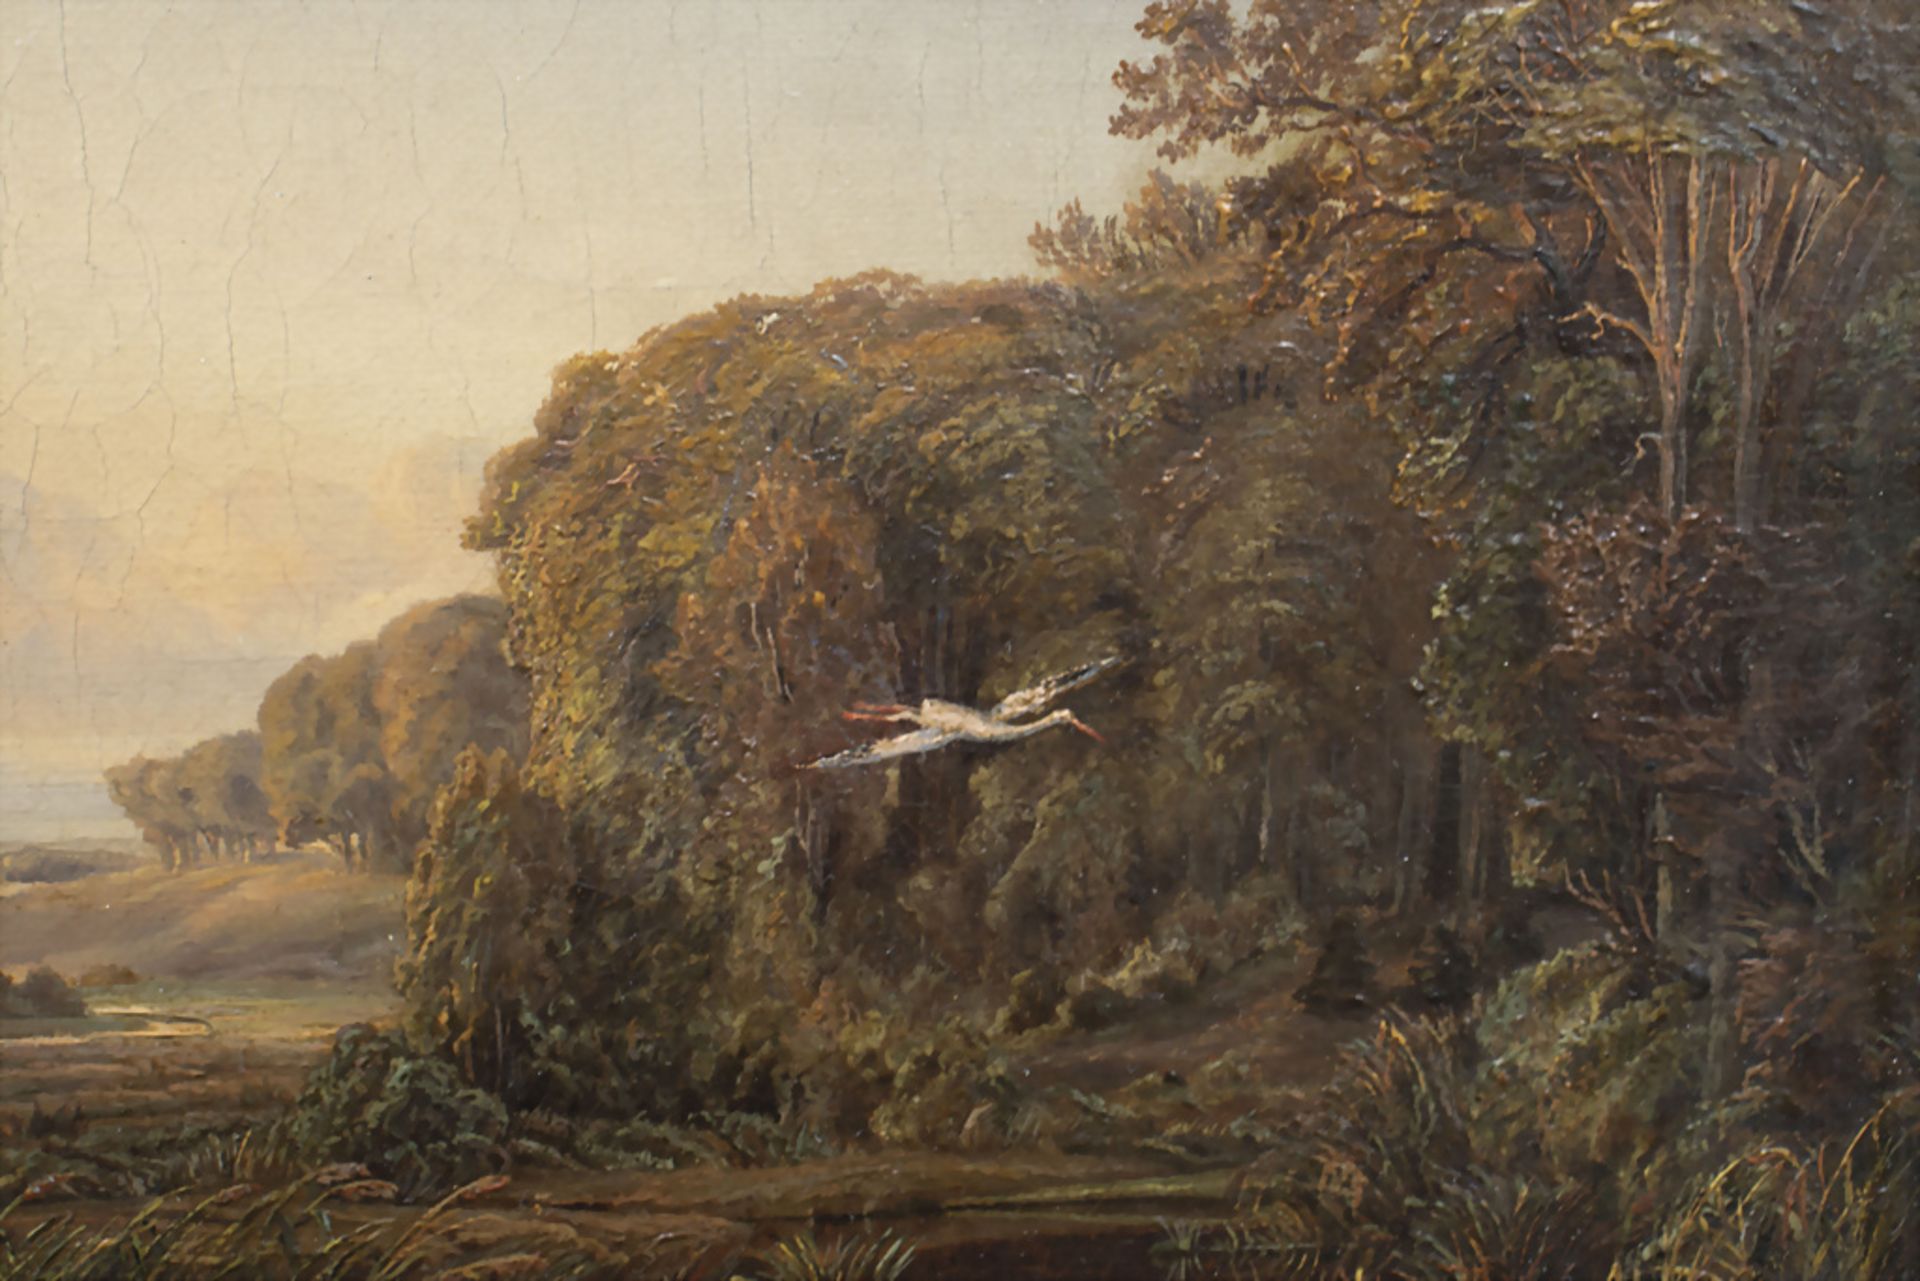 Monogrammist des 19. Jh., 'Landschaft mit Reiher' / 'A landscape with heron', 1842 - Bild 5 aus 7